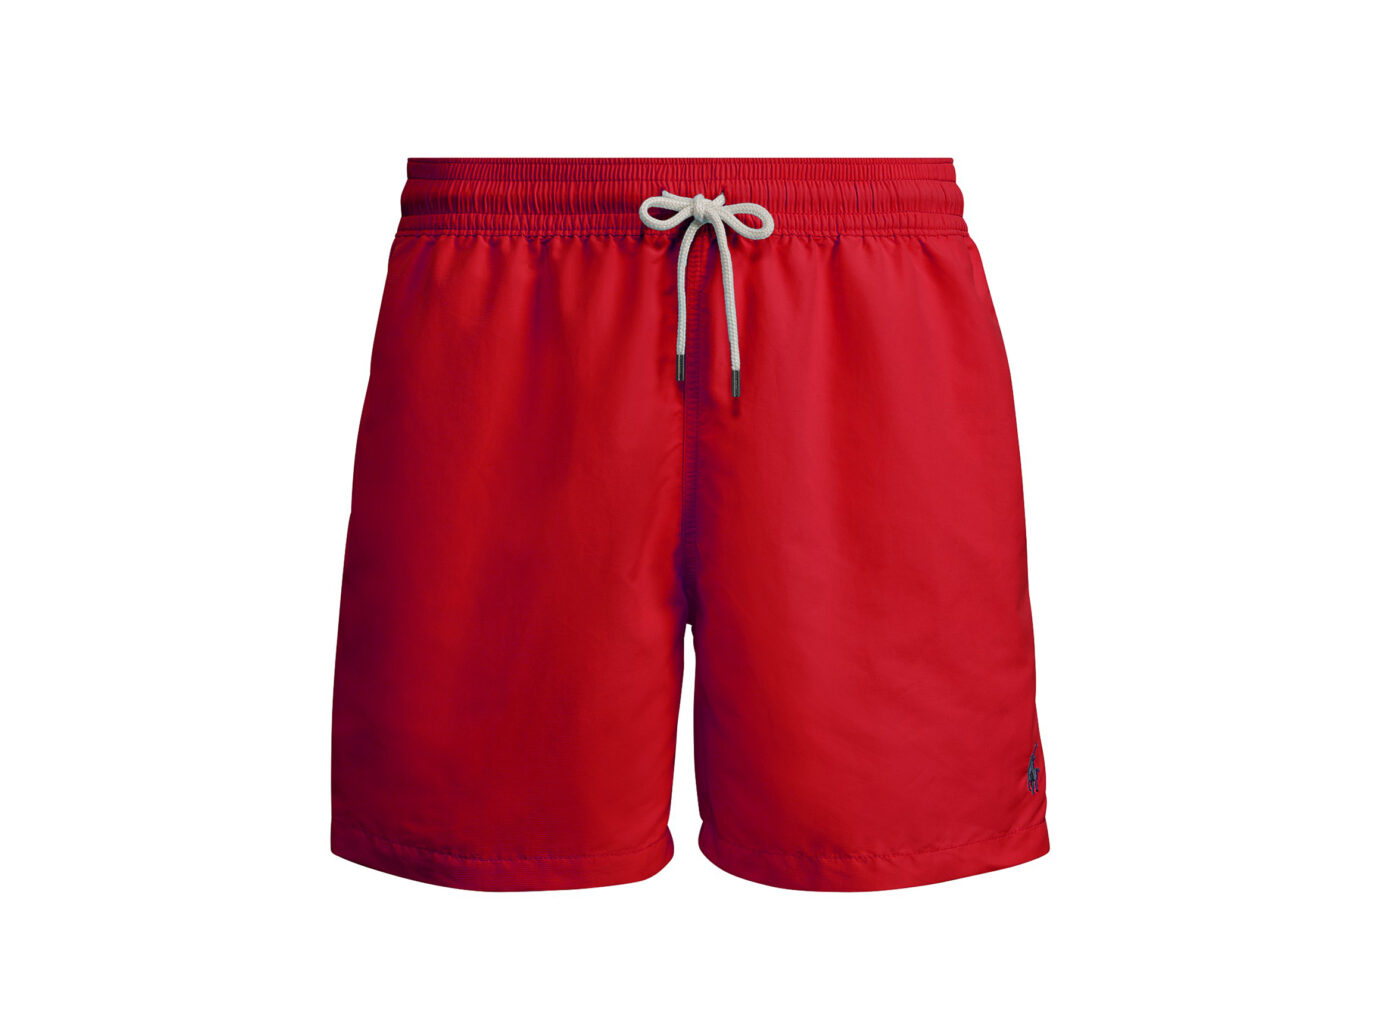 Polo Ralph Lauren Traveler Swim Trunks in Red